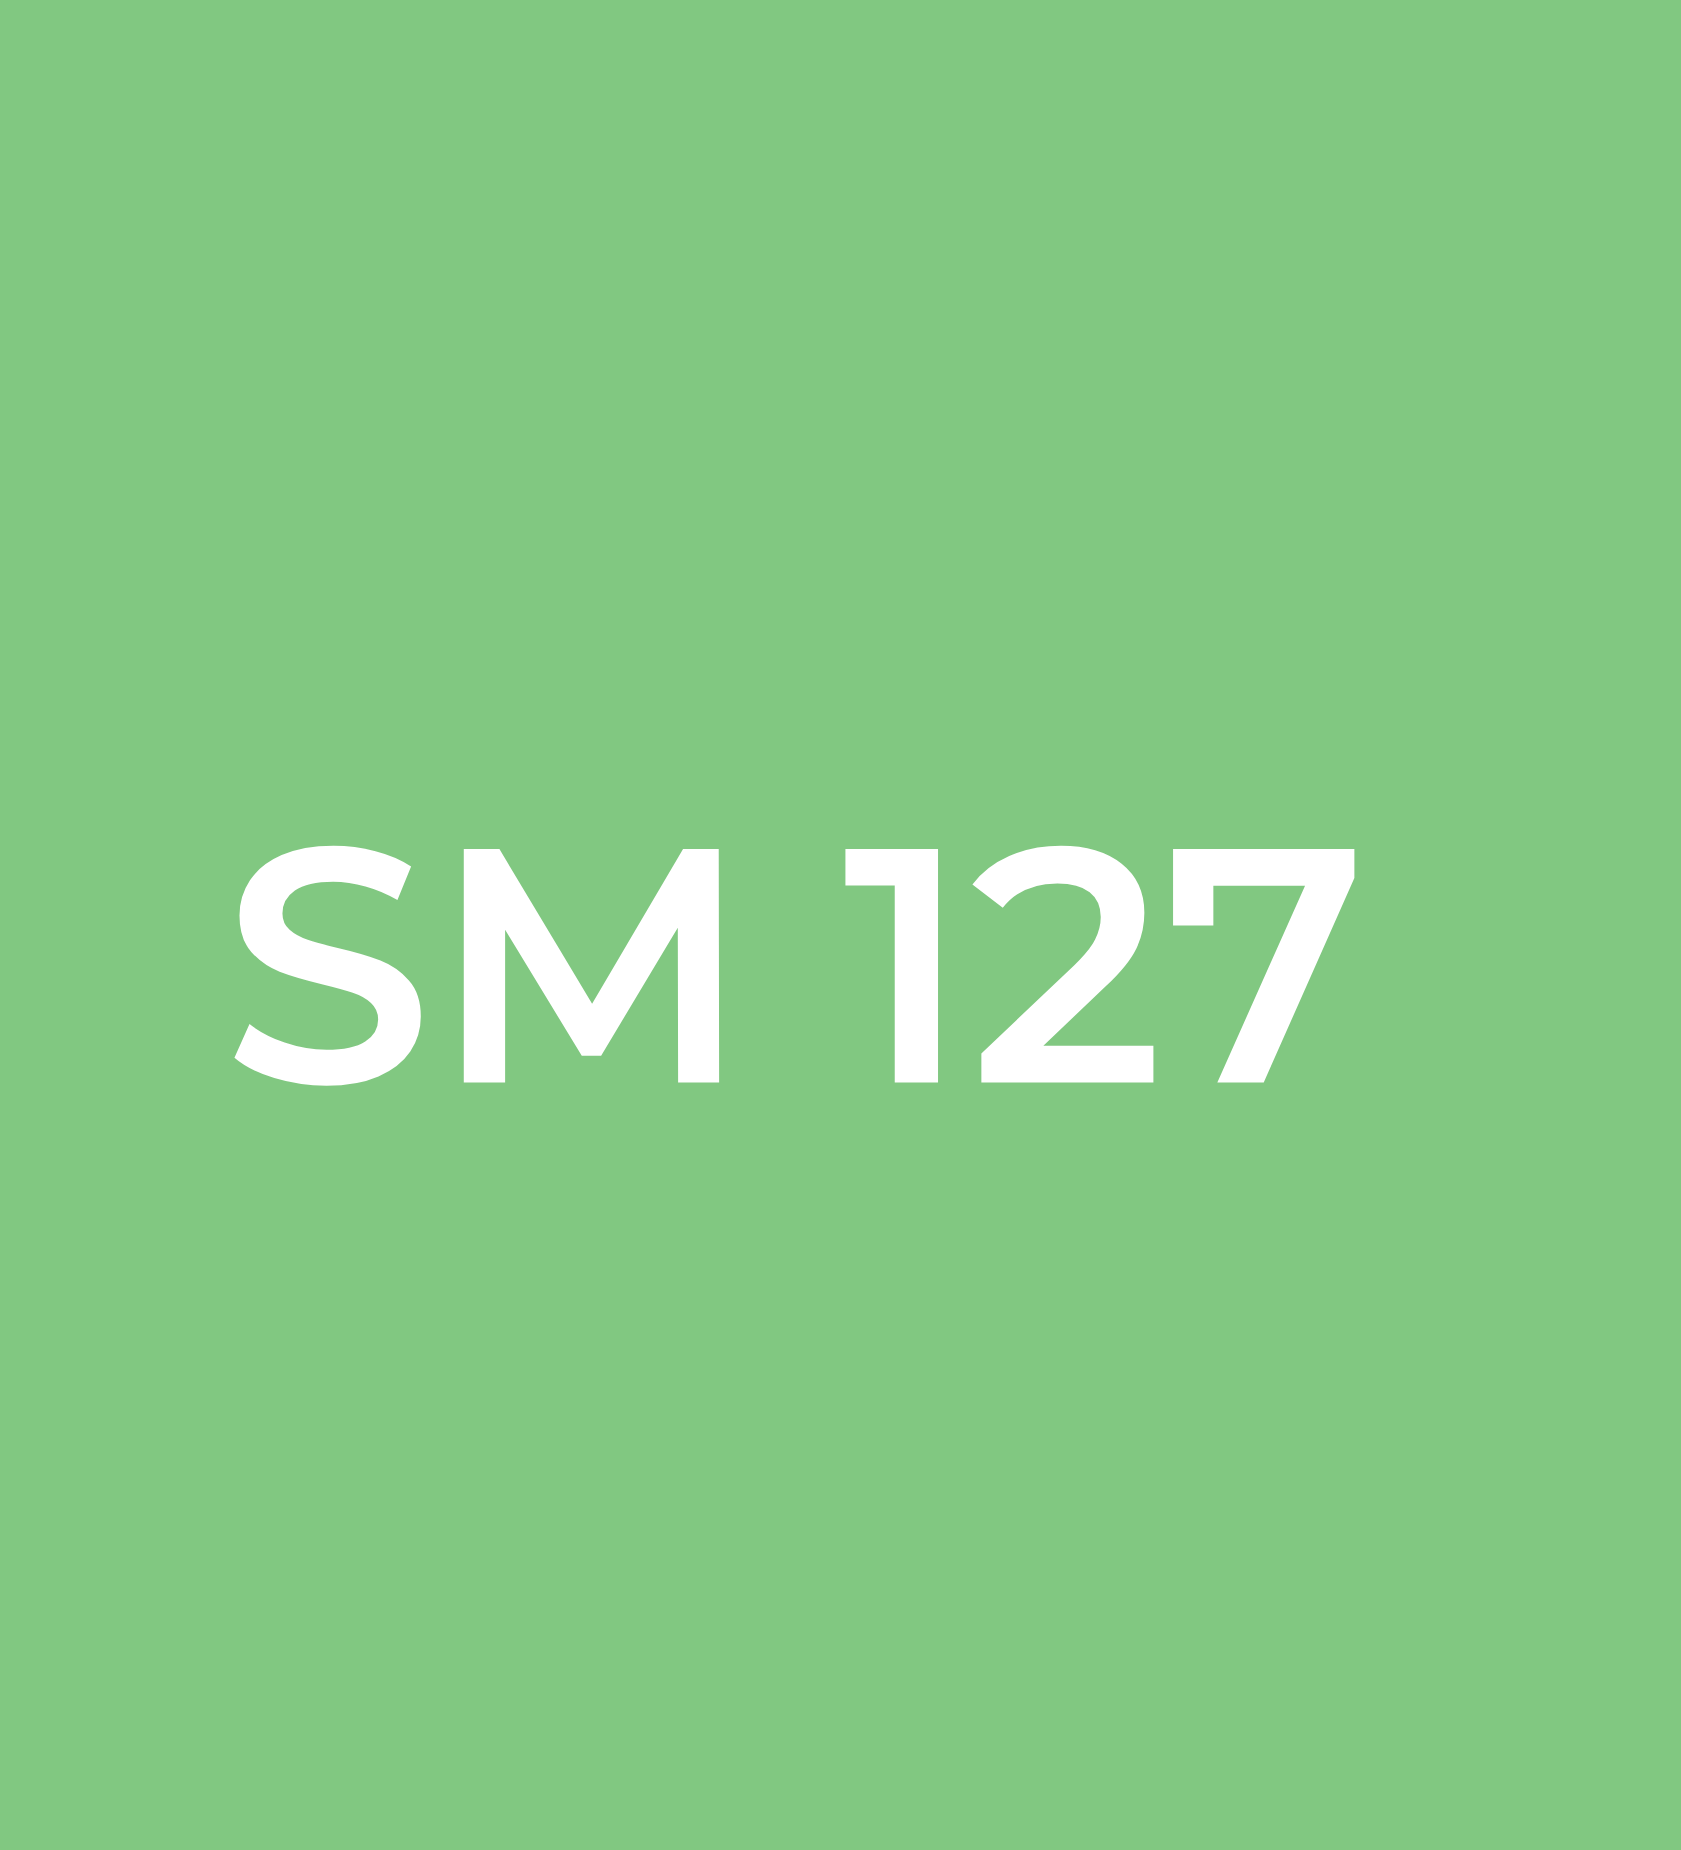 SM 127